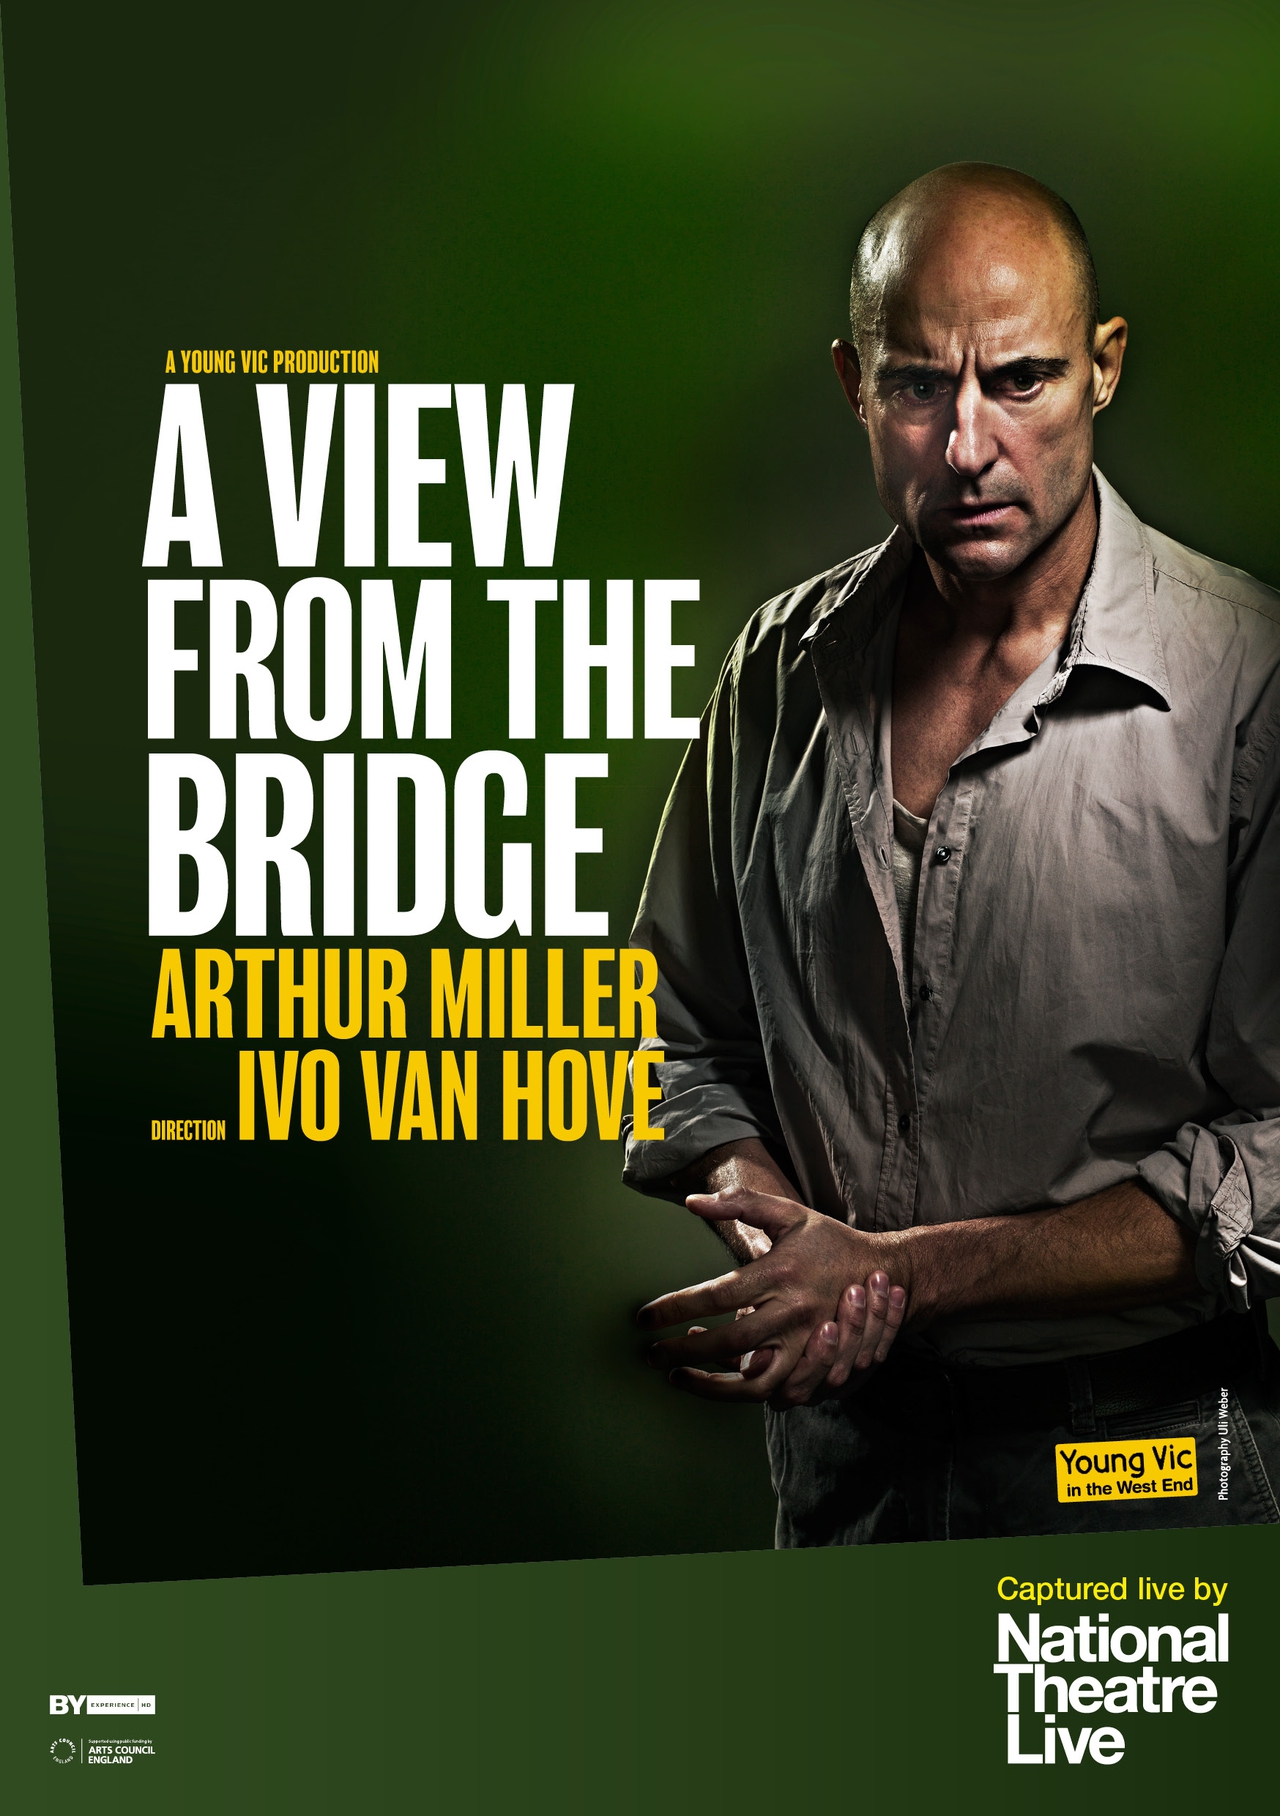  فیلم سینمایی National Theatre Live: A View from the Bridge به کارگردانی Ivo van Hove